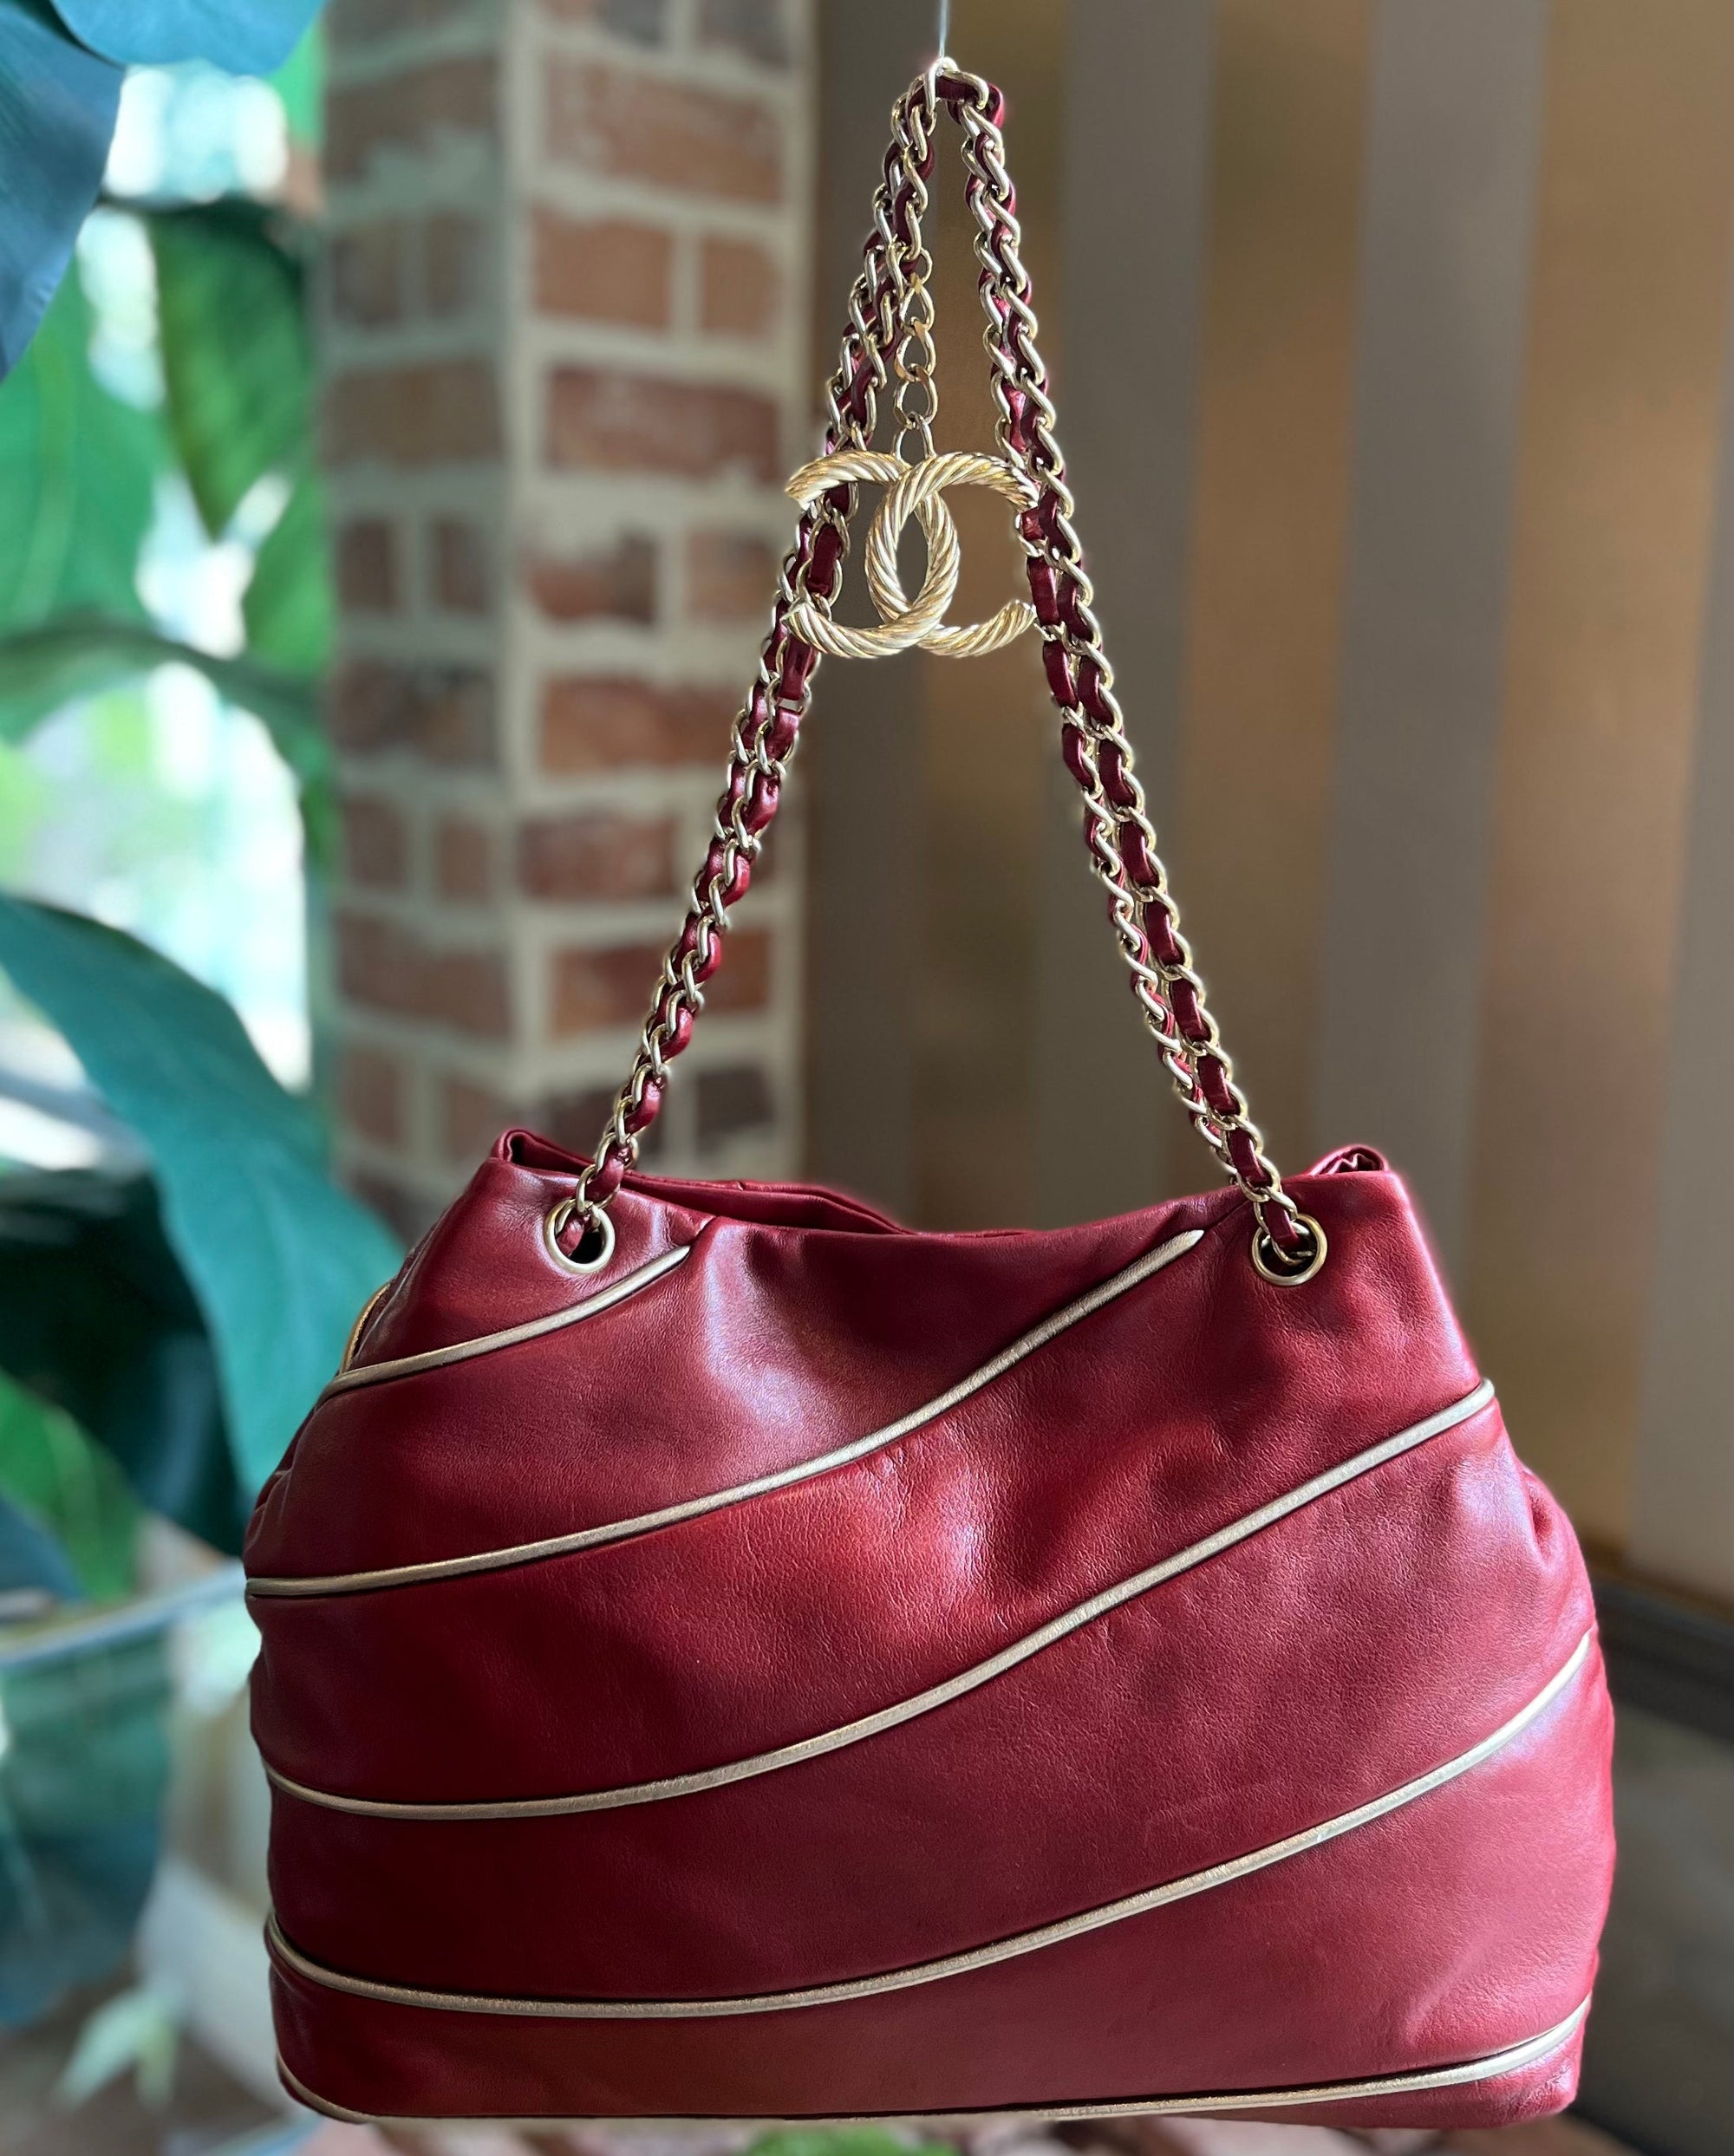 Handbags & Purses Tagged Model_Nile GM - The Purse Ladies